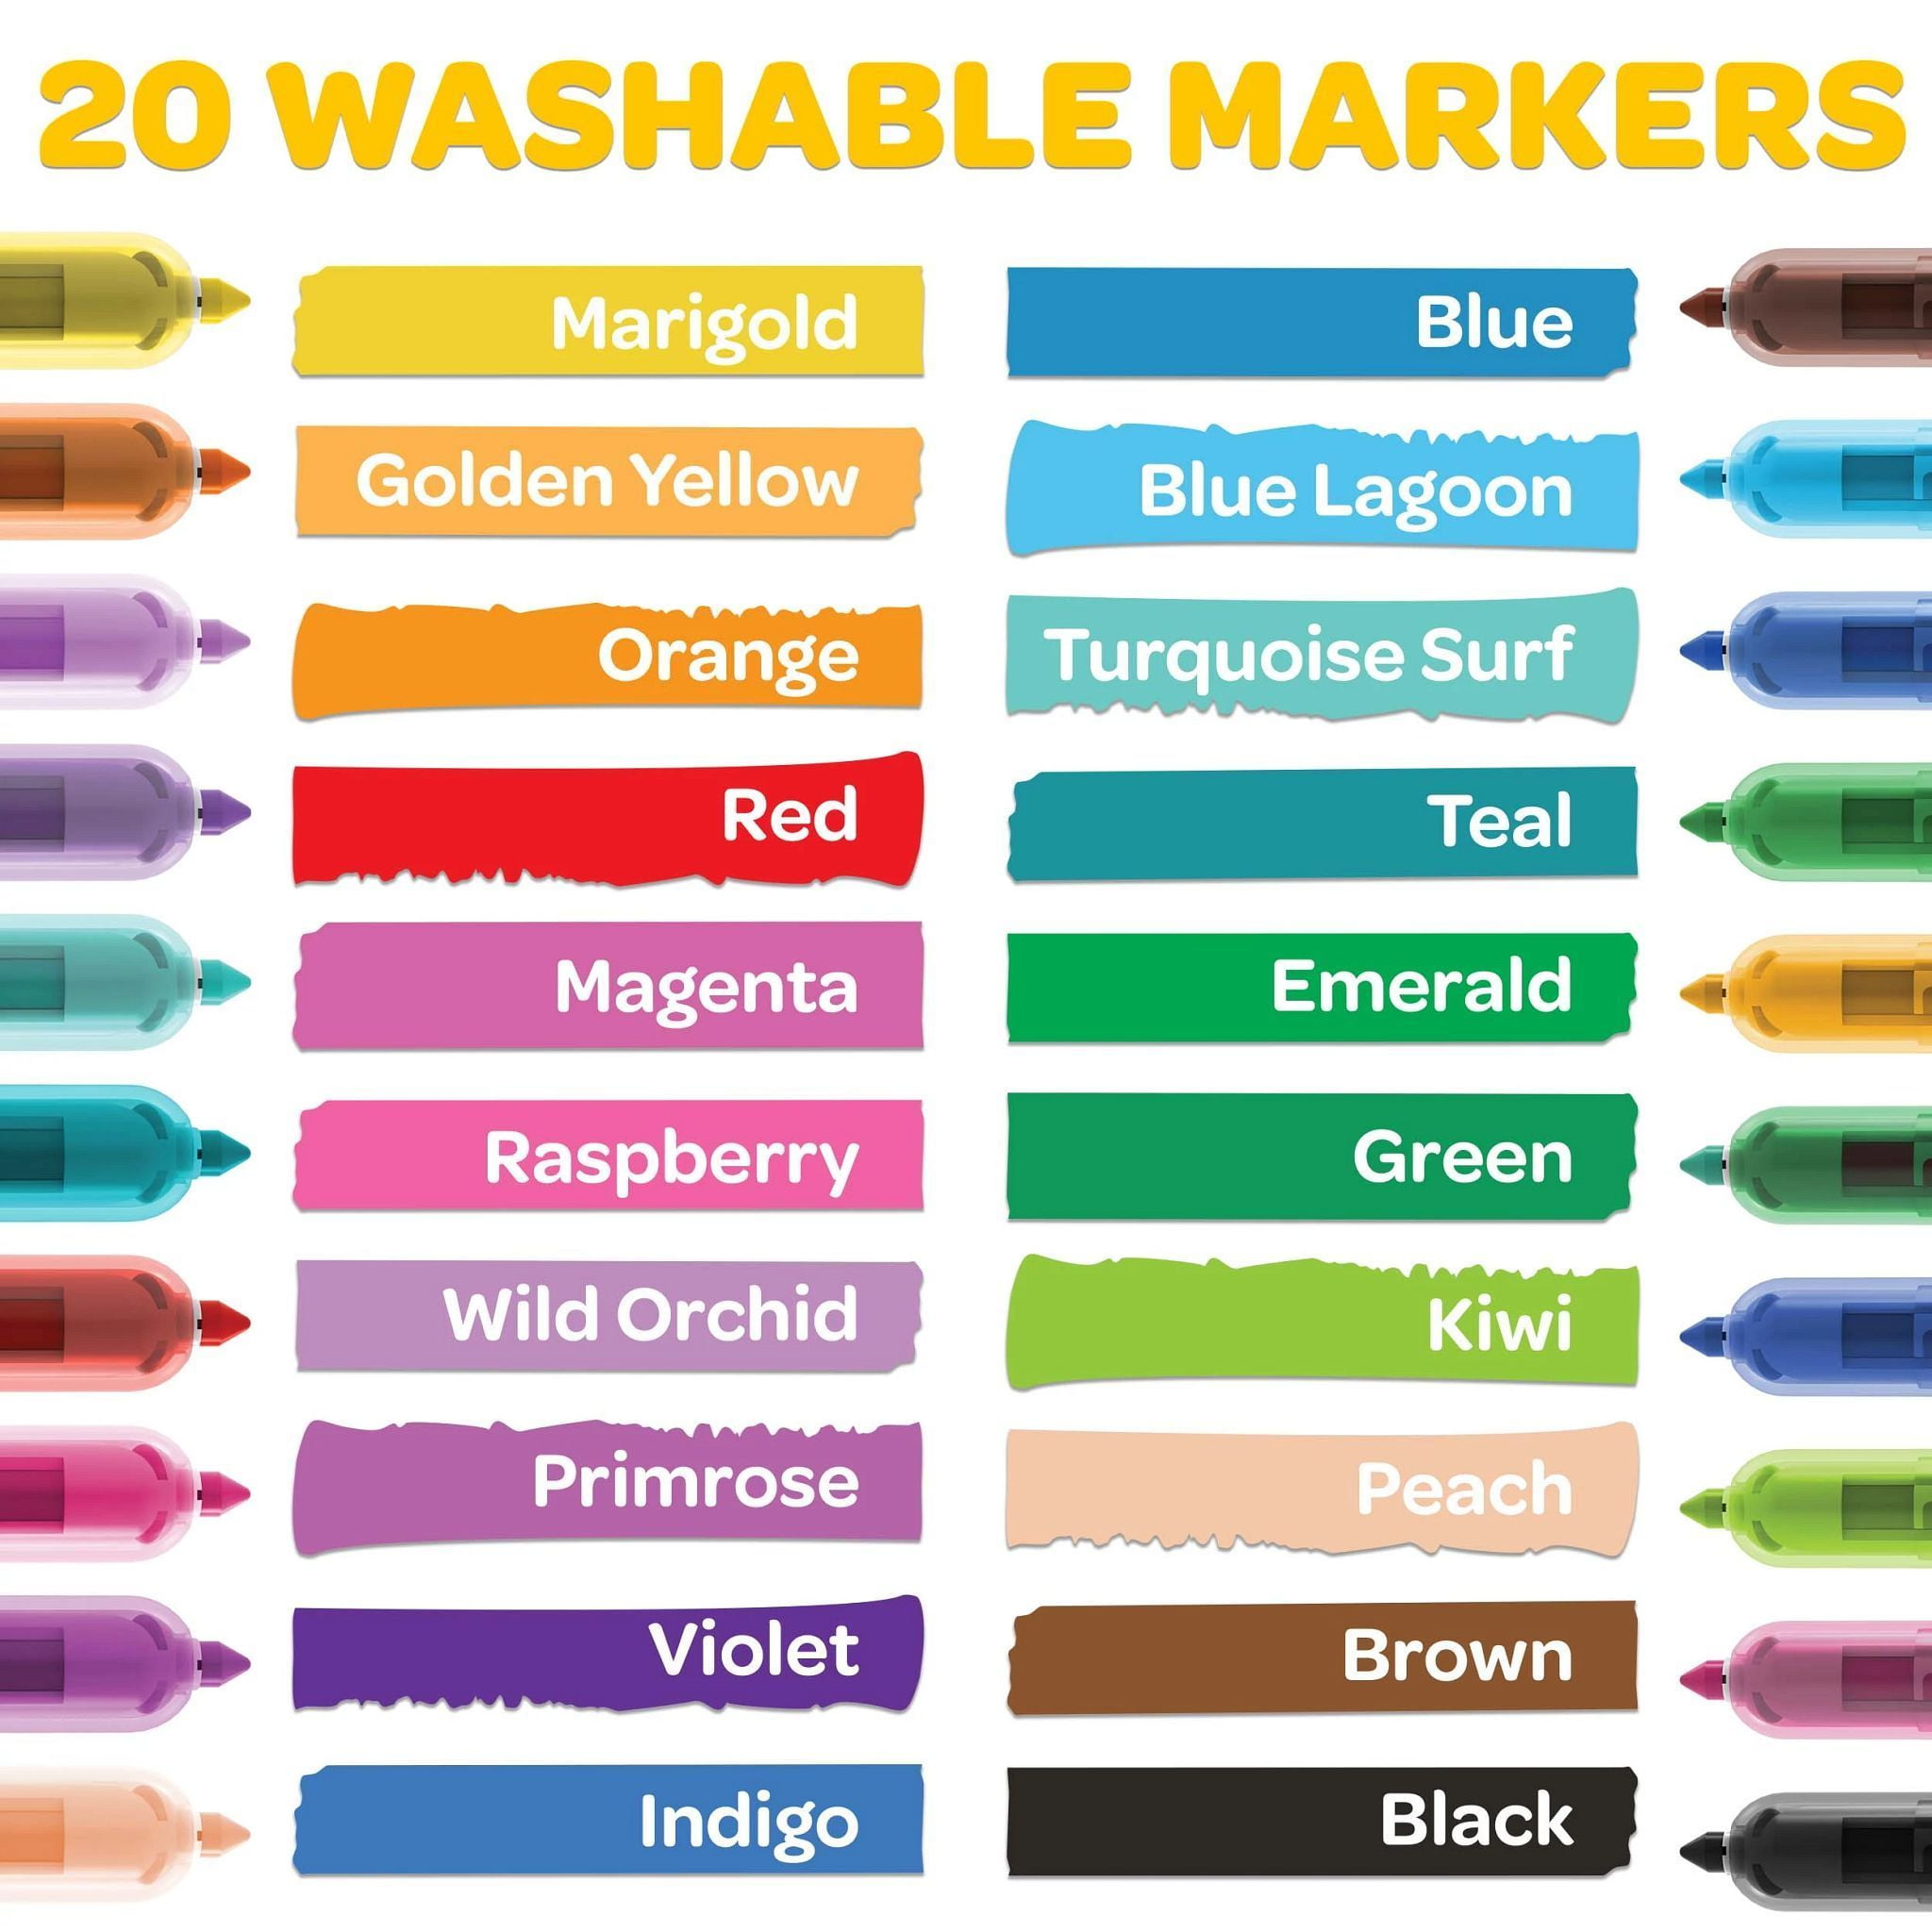 Crayola 10ct Clicks Retractable Washable Markers ~ Model #58-8370